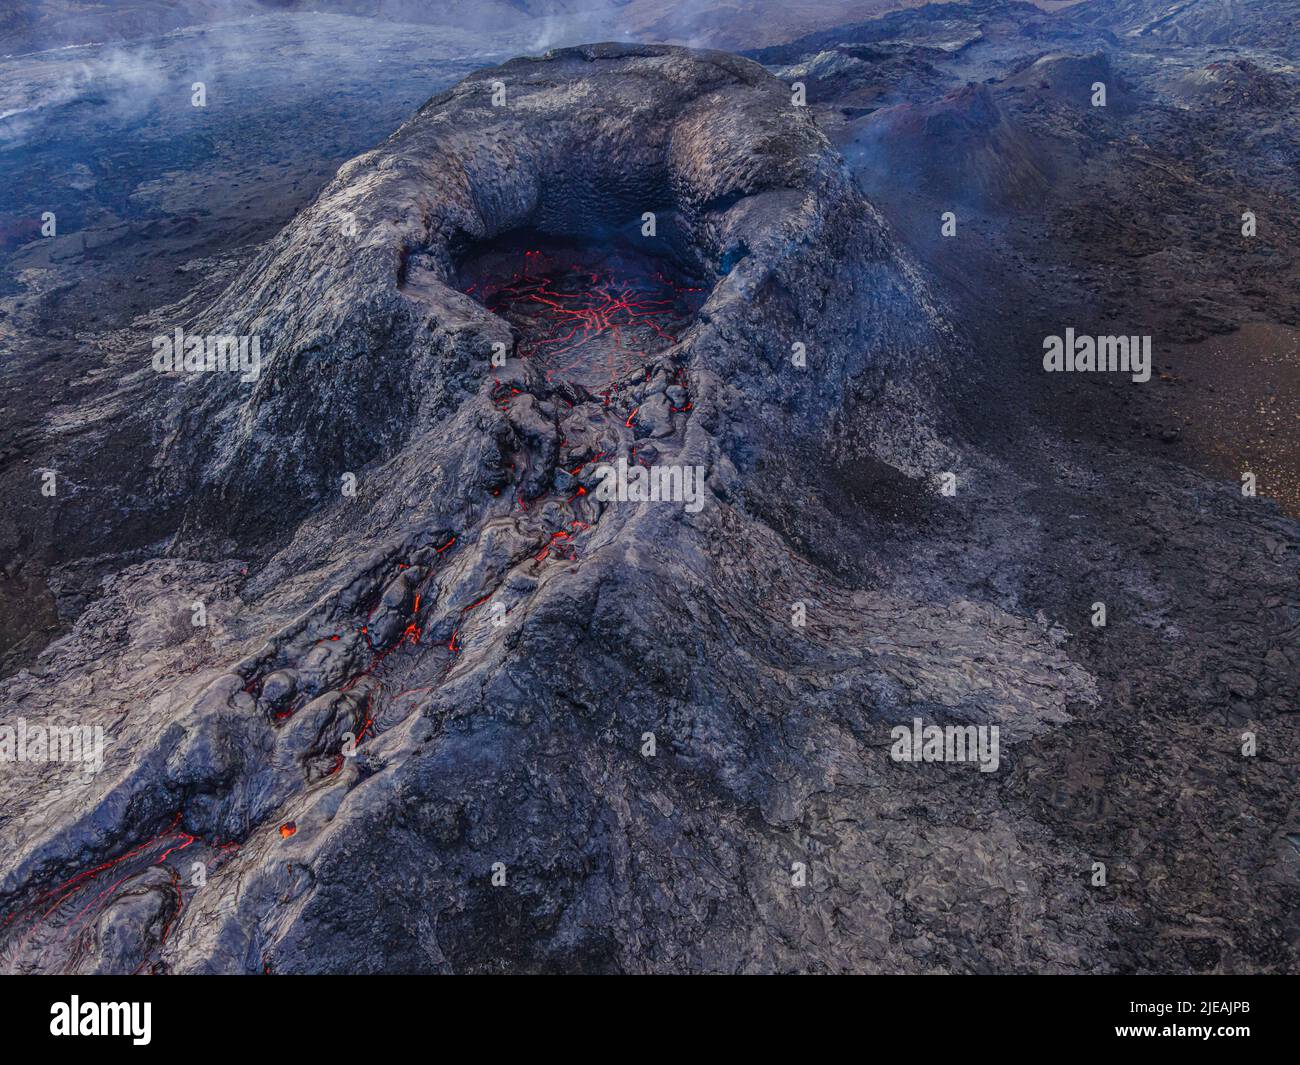 Blick auf den Vulkankrater. Strukturen aus roter Lava in der Krater-Mündung. Vulkan kurz vor Ausbruch. Dunkler, abgekühlter Magmagestein um den Krater. Stockfoto